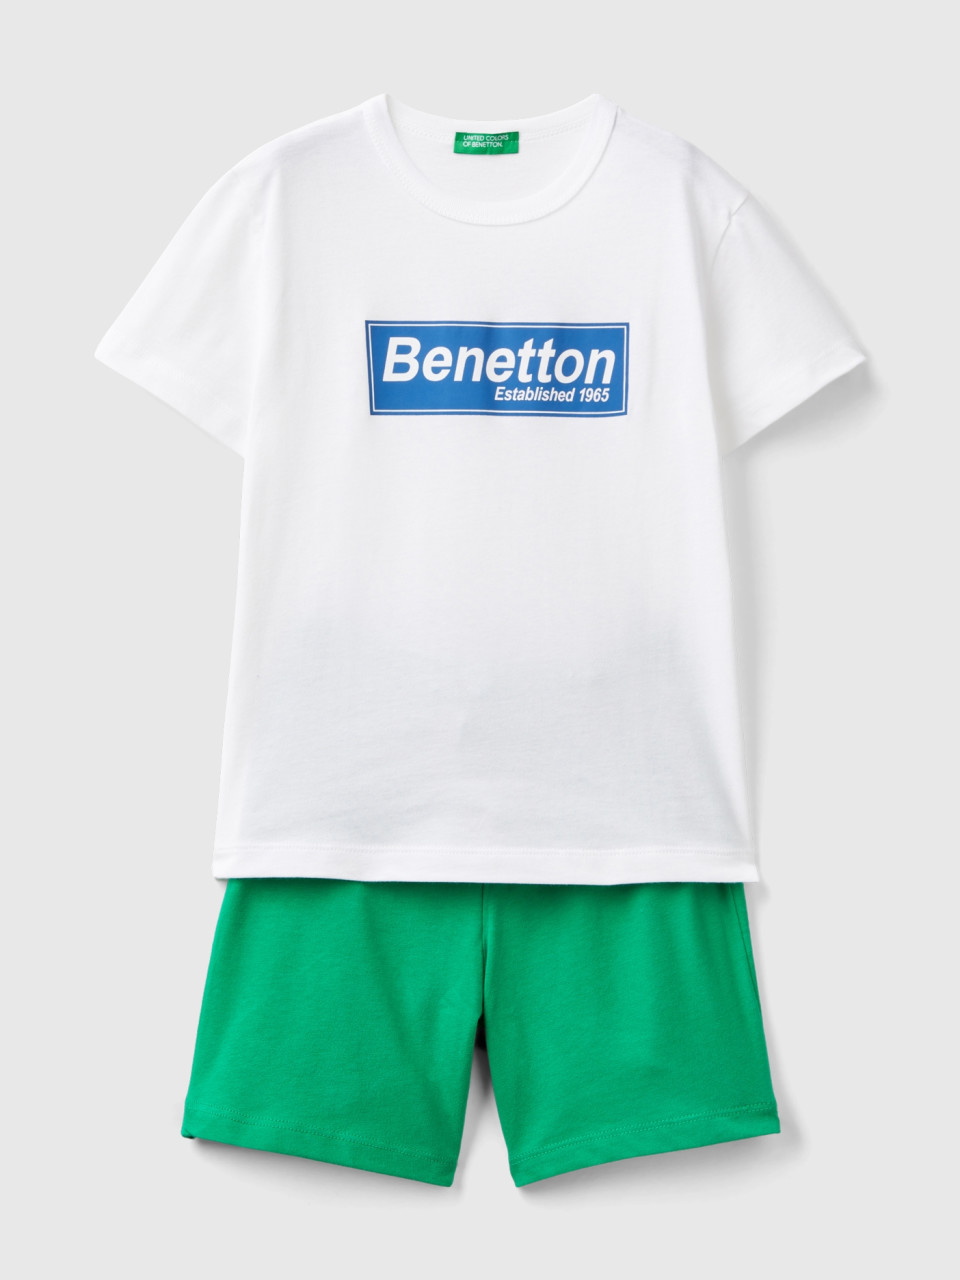 Benetton, Completo T-shirt E Bermuda 100% Cotone, Bianco, Bambini